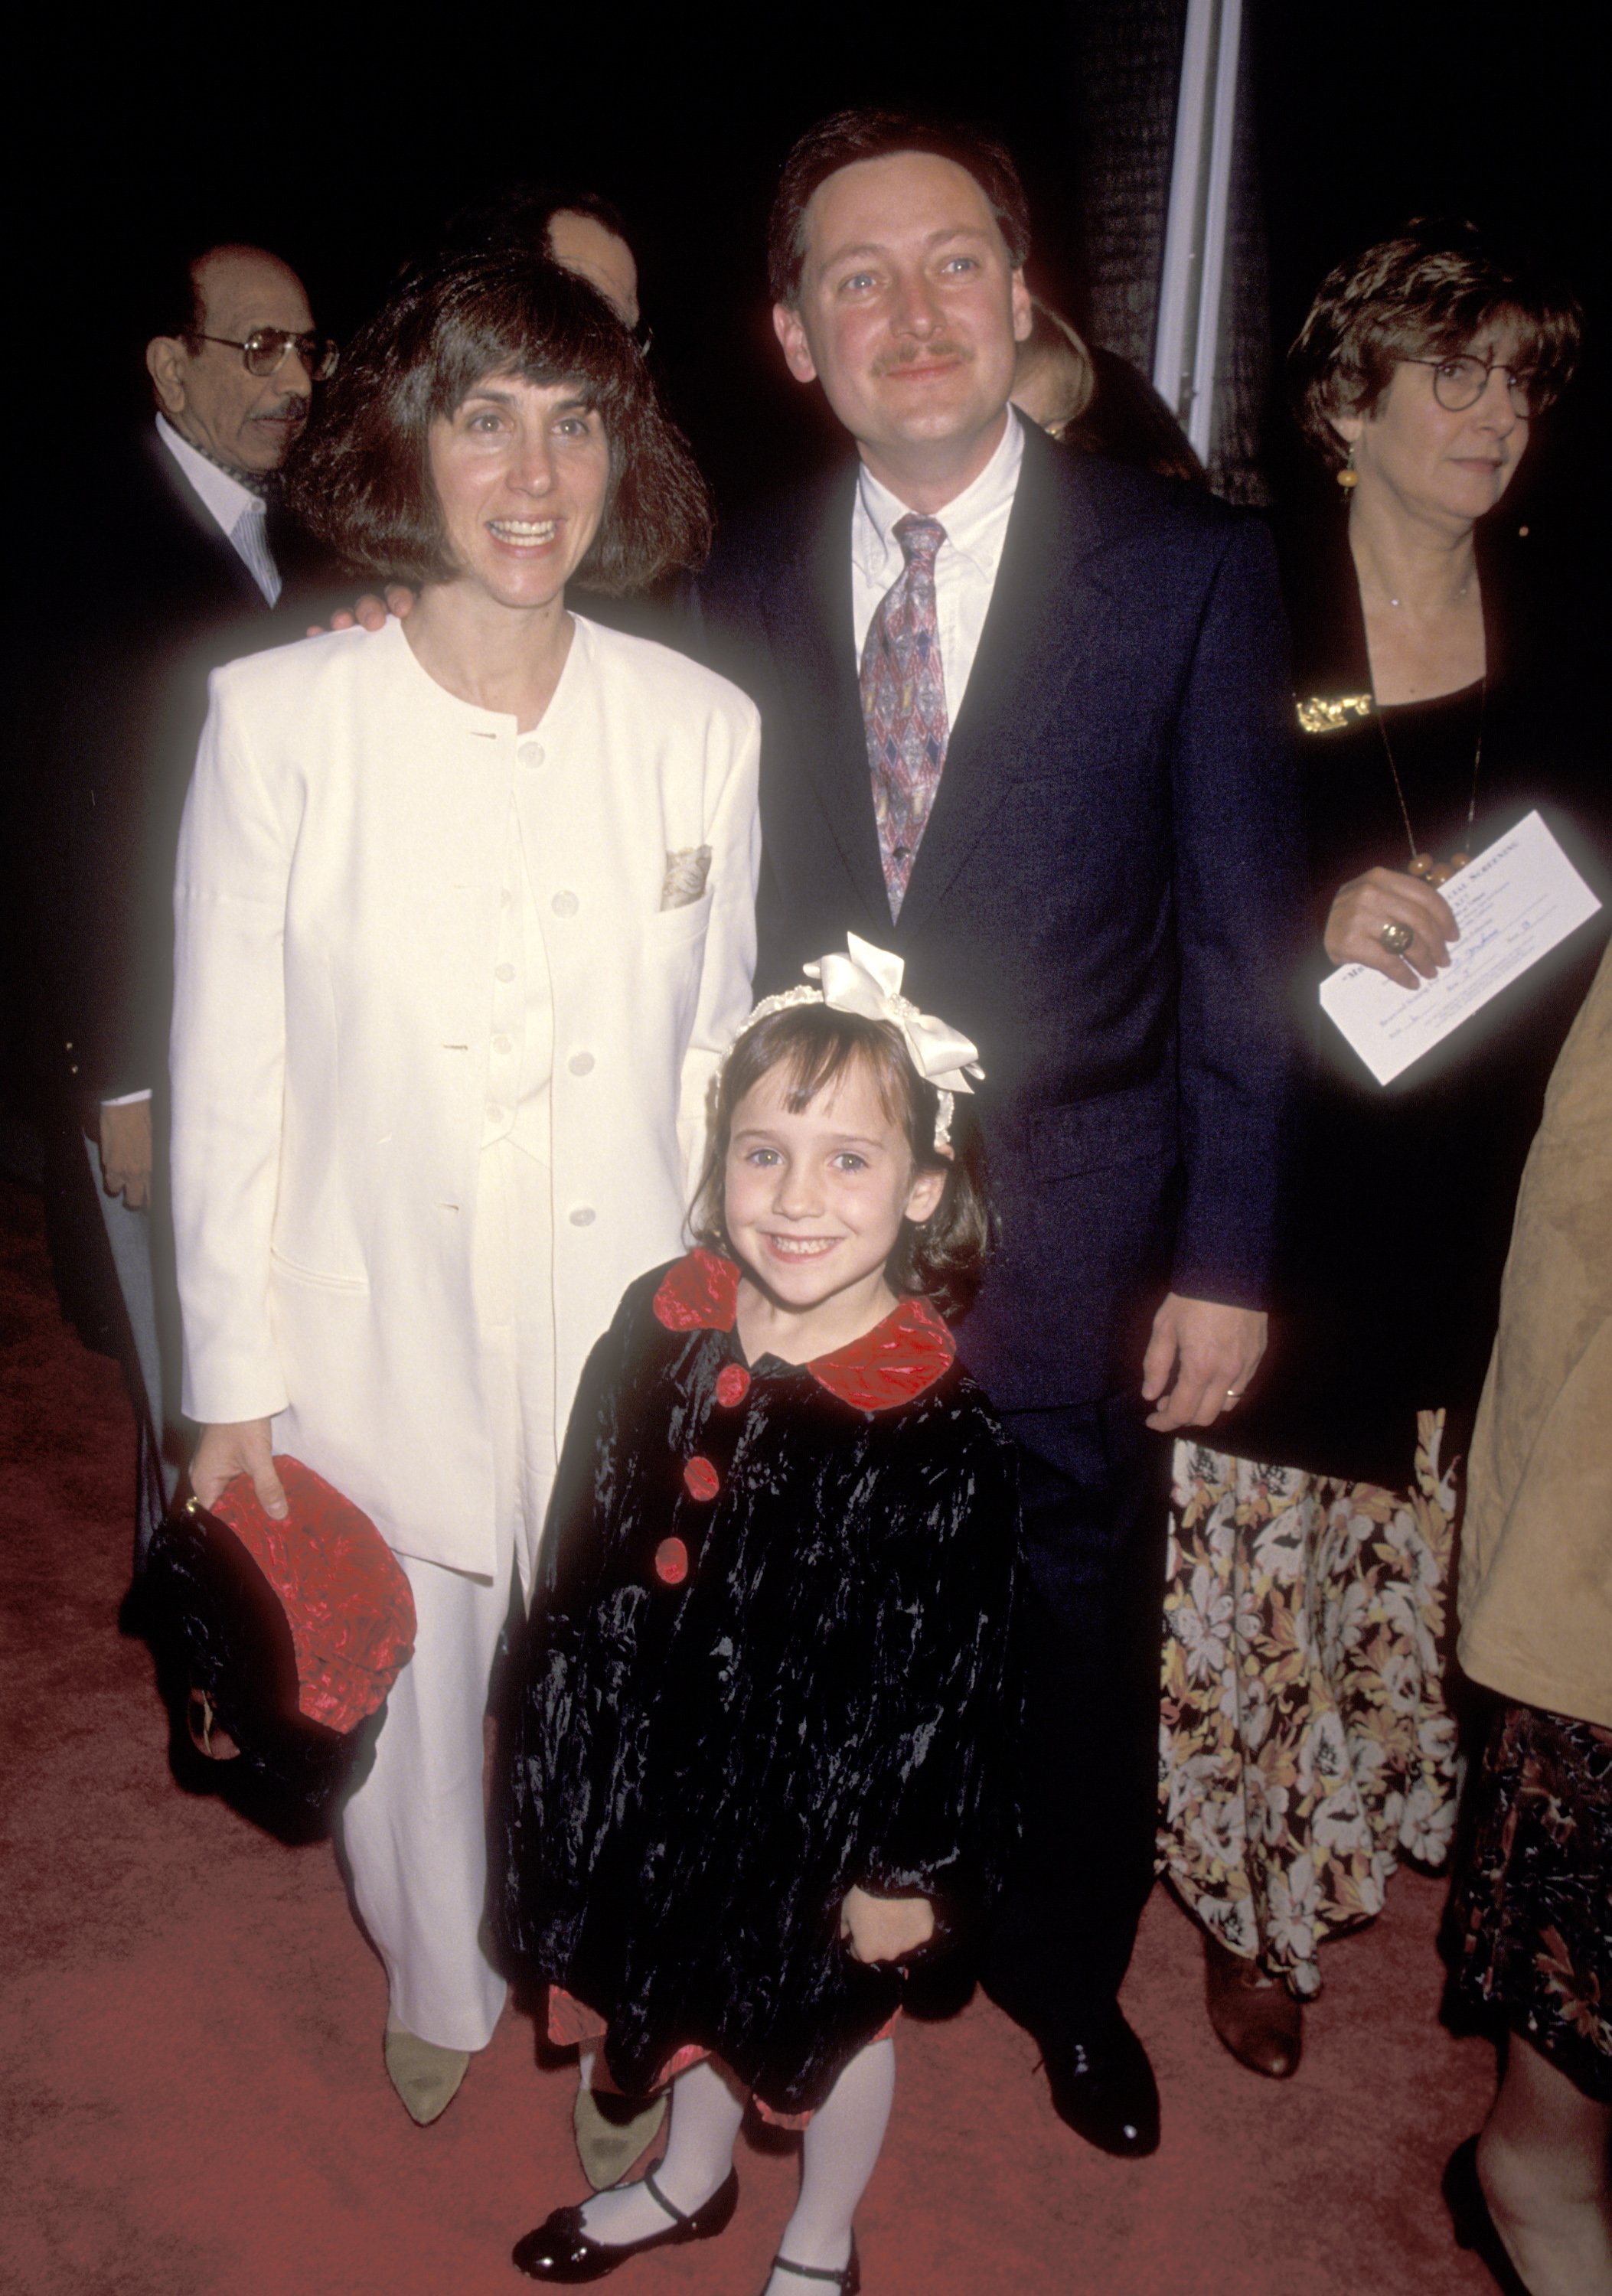 Suzie Shapiro, Michael Wilson und Mara Wilson bei der Premiere von "Mrs. Doubtfire" in Beverly Hills am 22. November 1993 in Beverly Hills, Kalifornien | Quelle: Getty Images